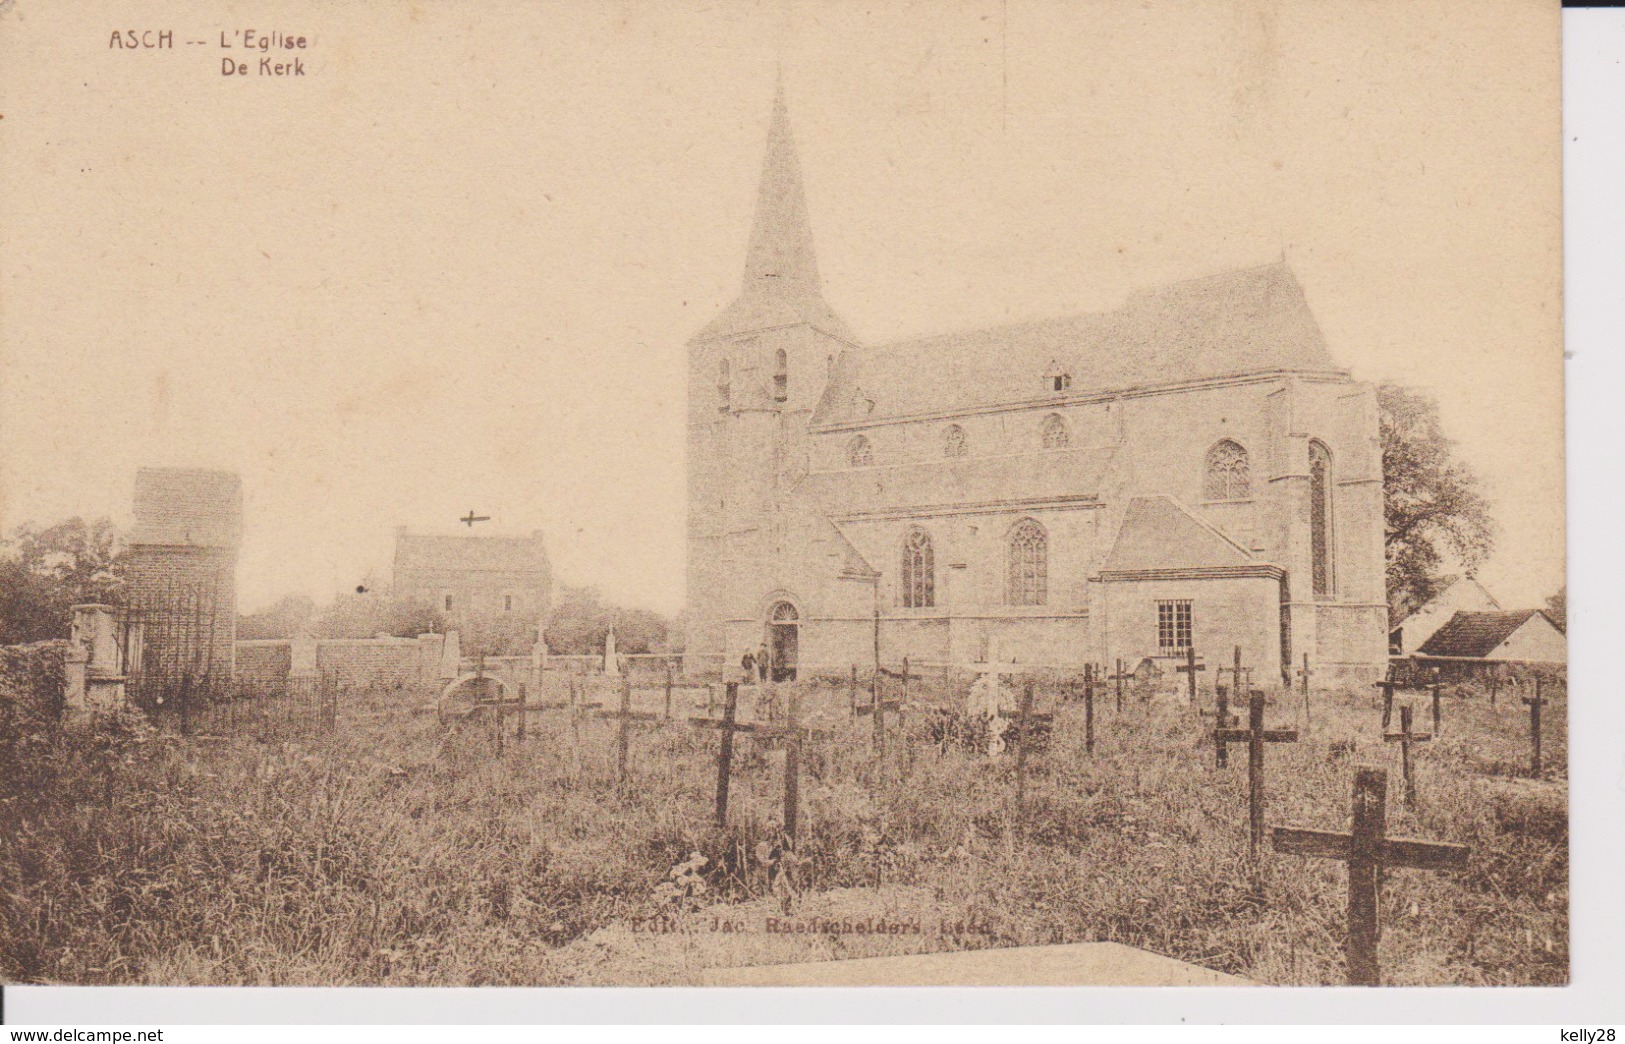 Asch - L'Eglise. De Kerk. (As.) - As